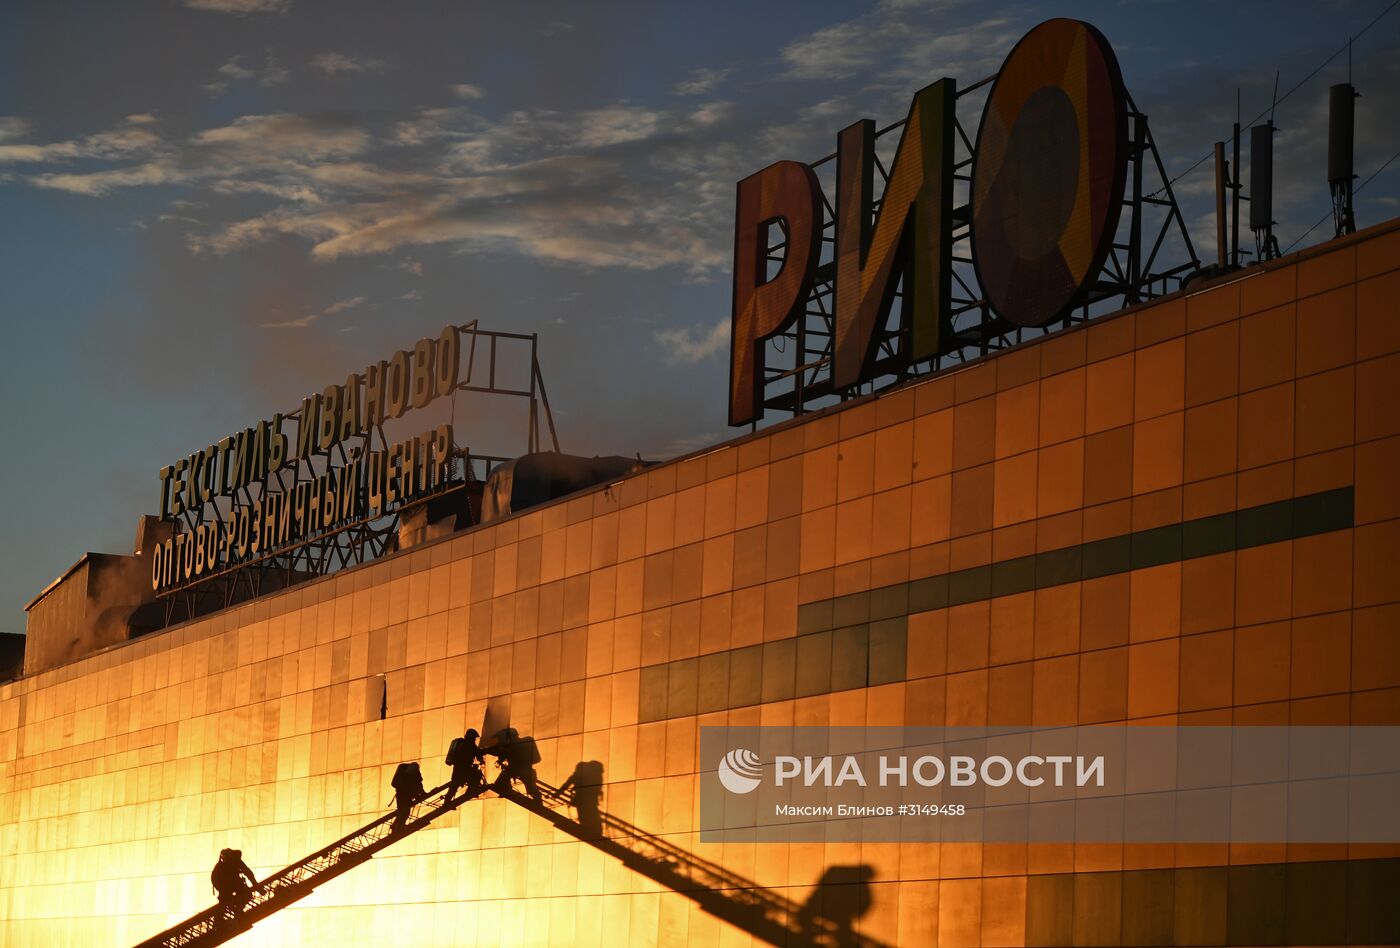 Пожар в ТЦ "РИО" в Москве